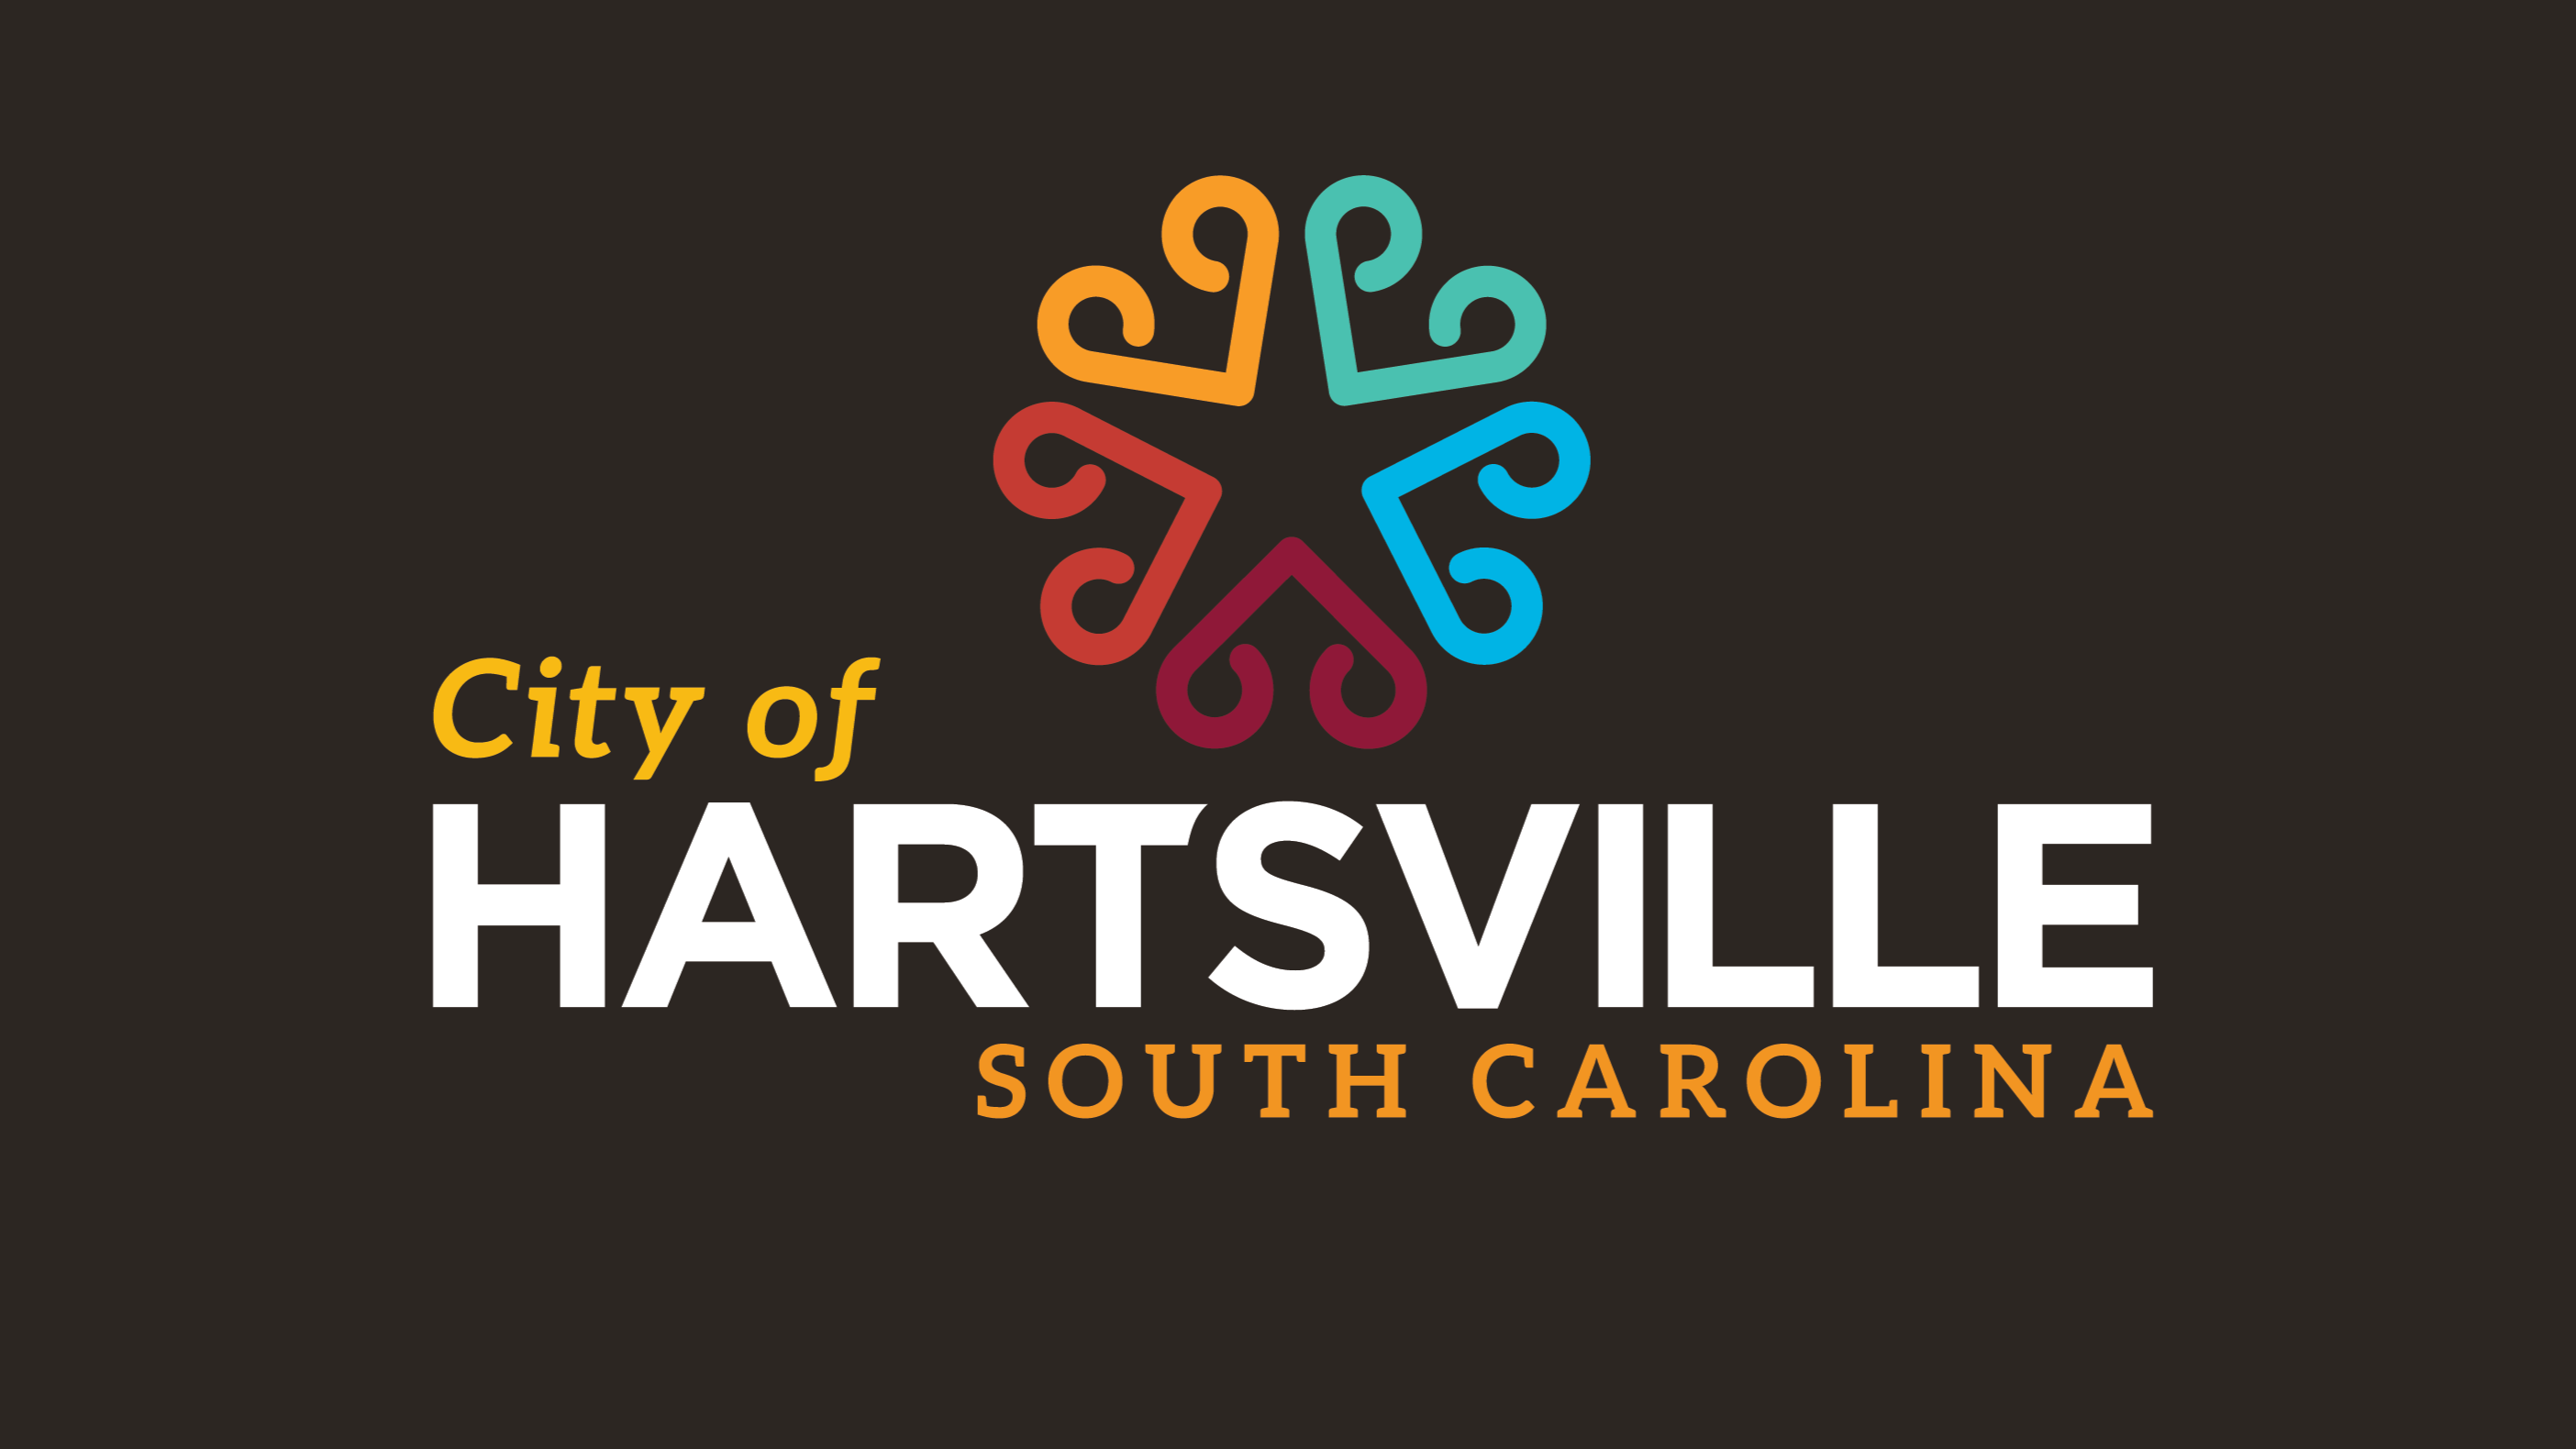 City of Hartsville logo on a dark background.